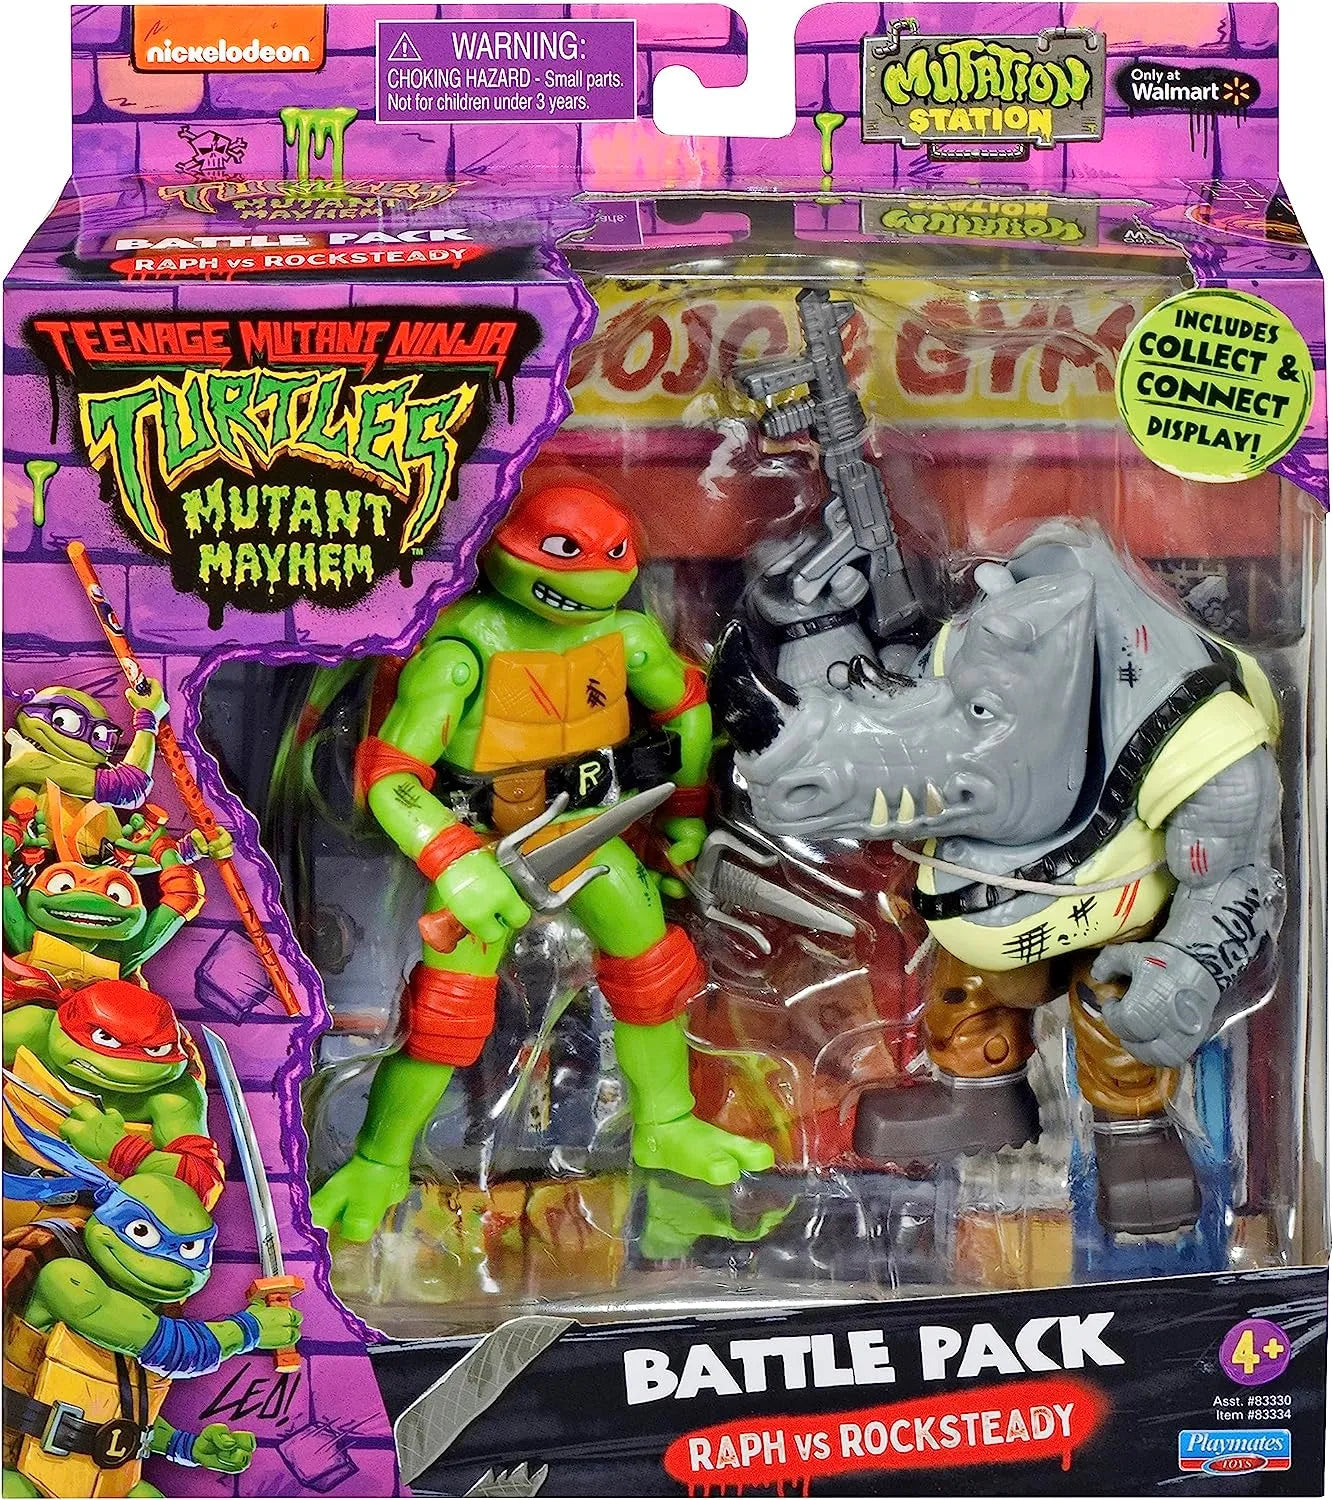 Playmates Toys - Teenage Mutant Ninja Turtles: Mutant Mayhem - Raph vs. Rocksteady Battle Pack